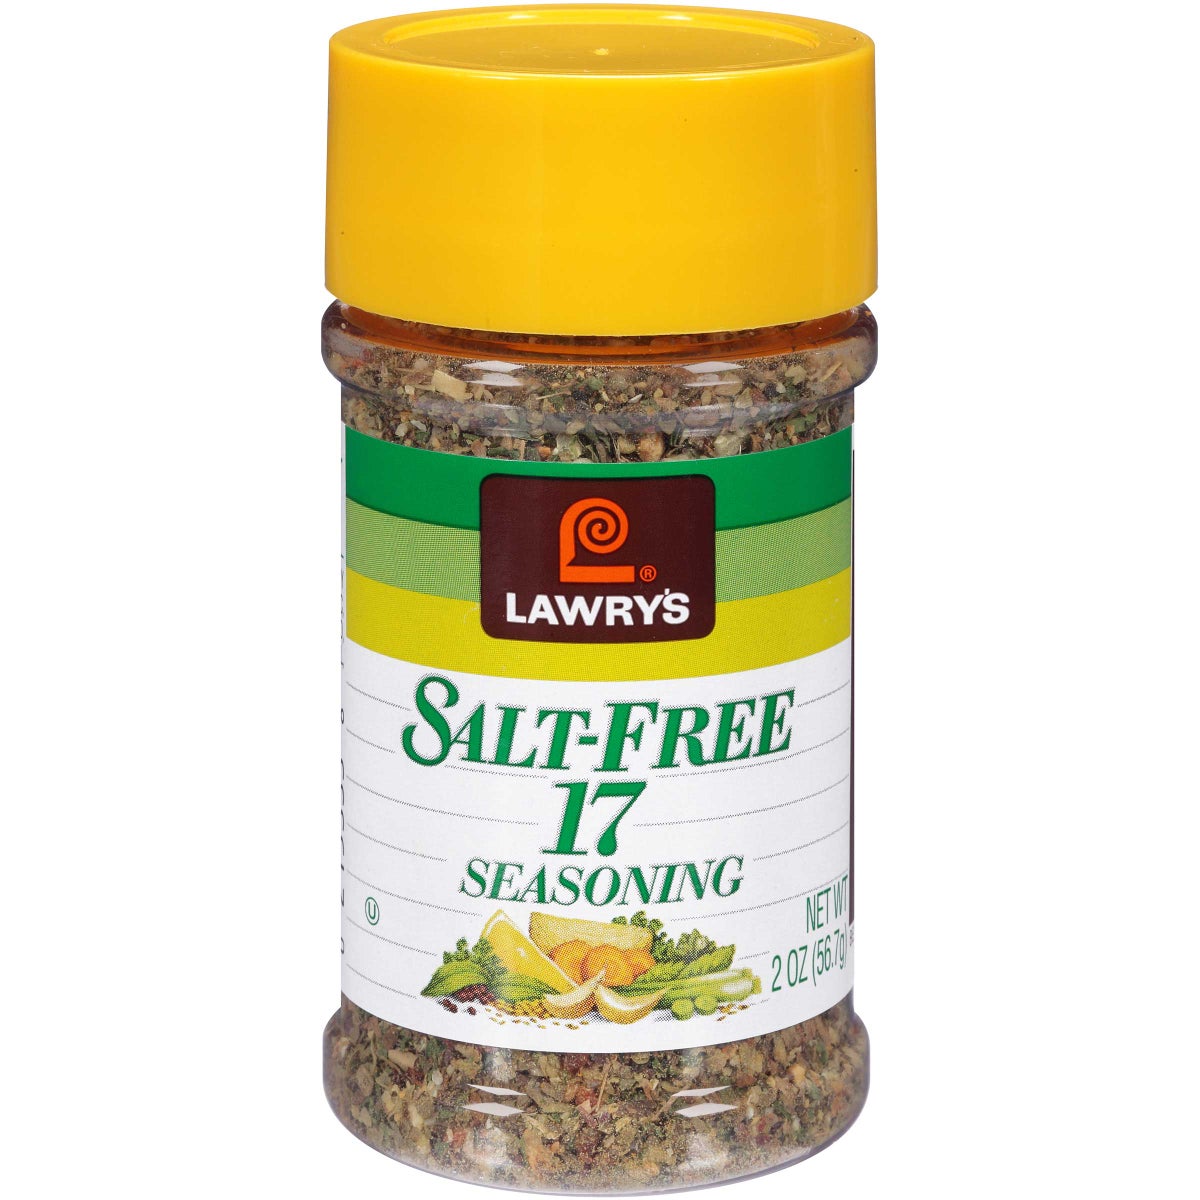 Lawrys Salt-Free 17 Seasoning Case